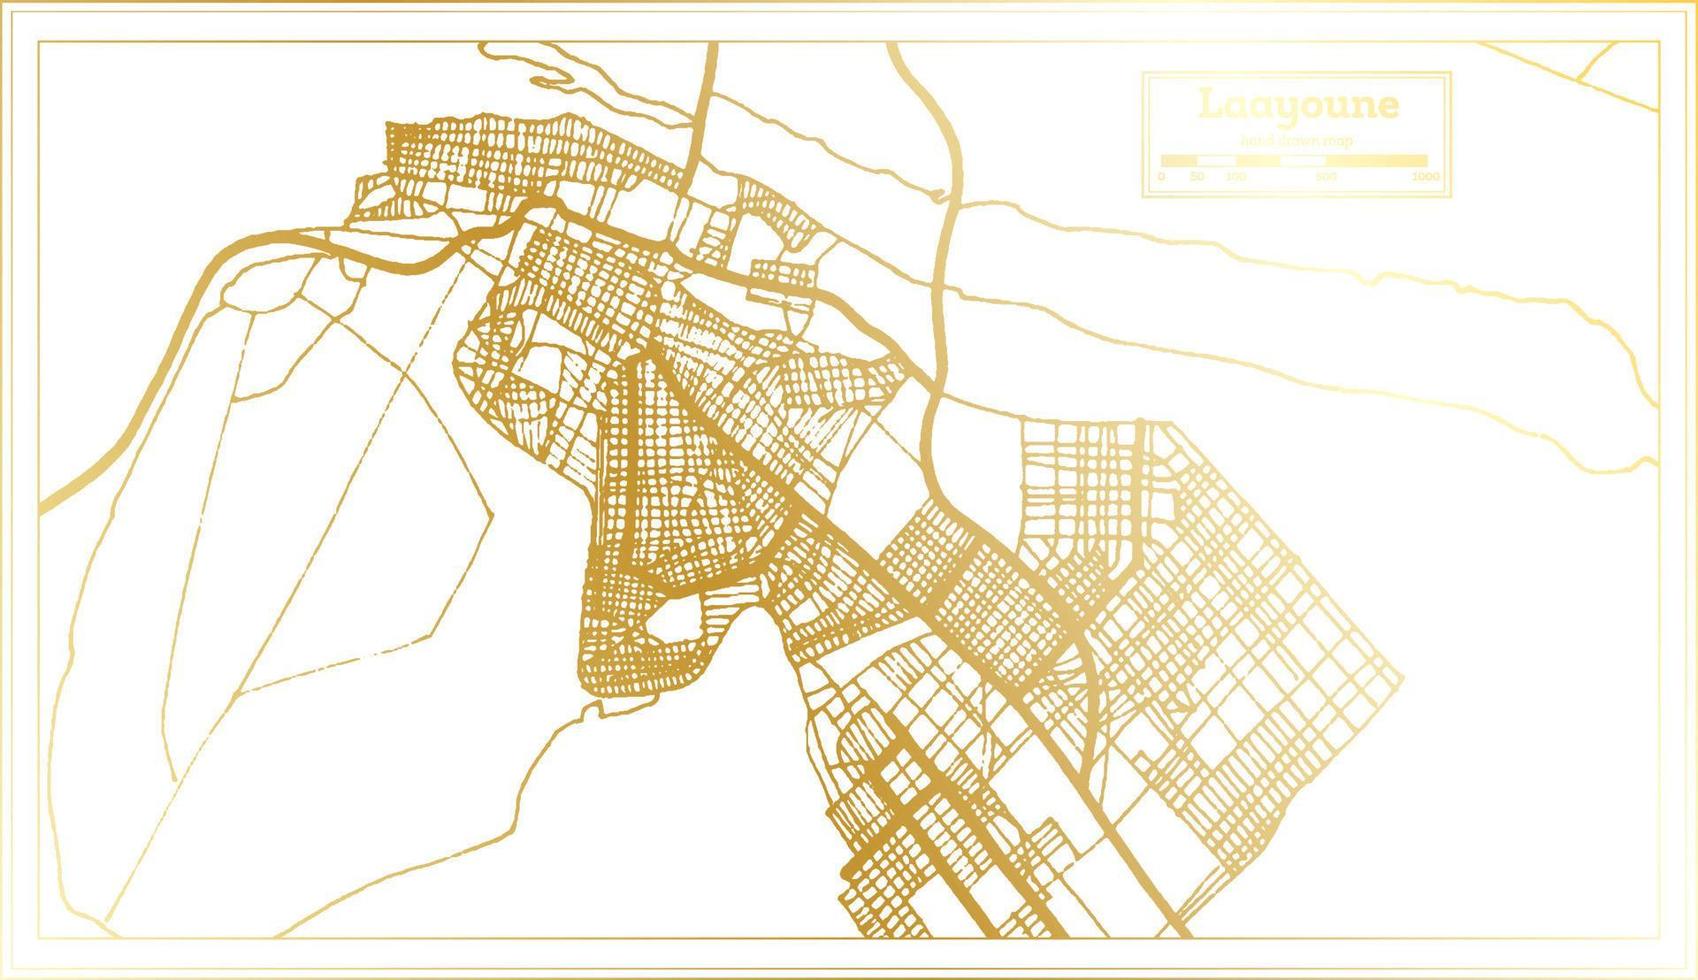 mapa de la ciudad de laayoune sahara en estilo retro en color dorado. esquema del mapa. vector